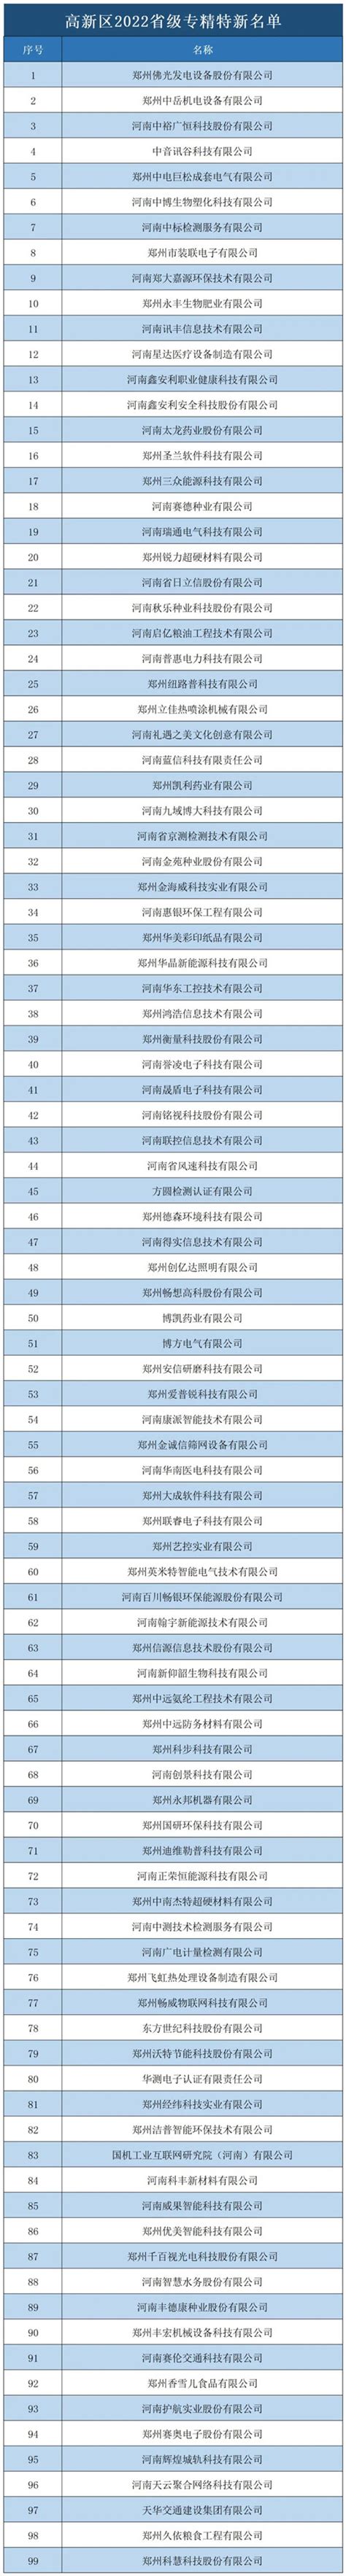 郑州高新区99家企业入选2022年度河南省“专精特新”中小企业拟认定名单